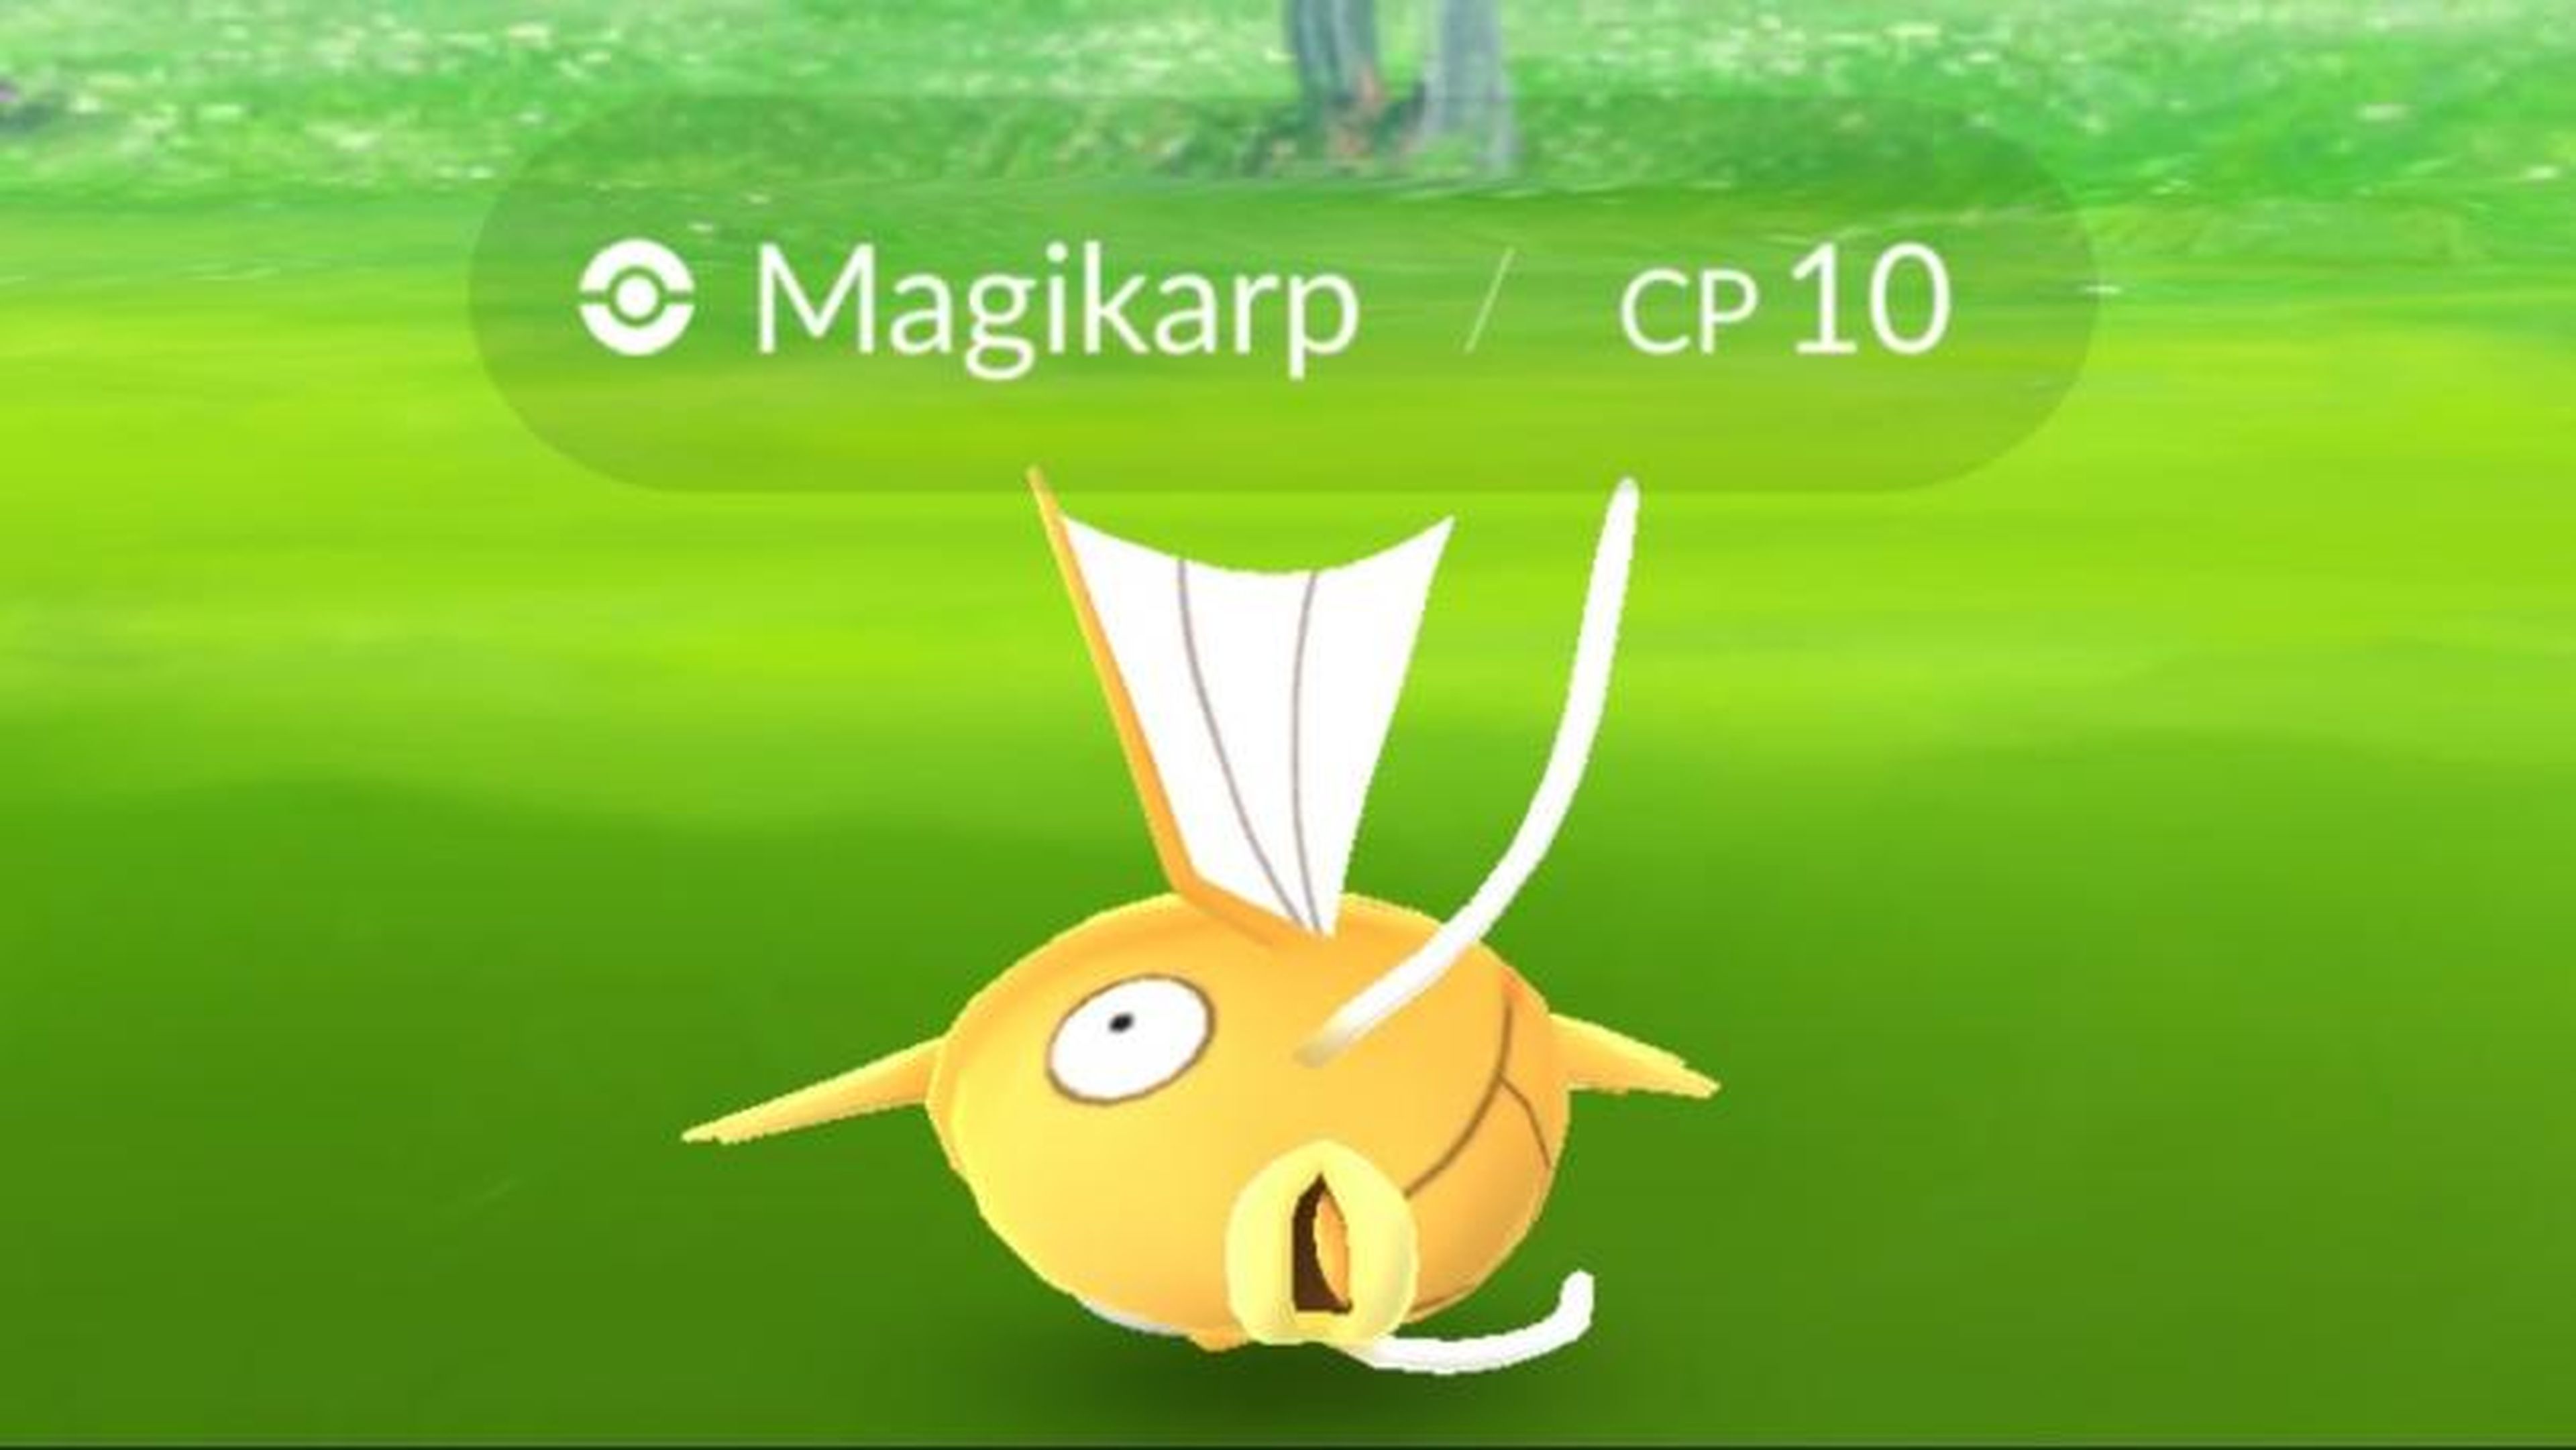 Pokémon Go Brilhantes como capturar Magikarp Brilhante, Gyarados